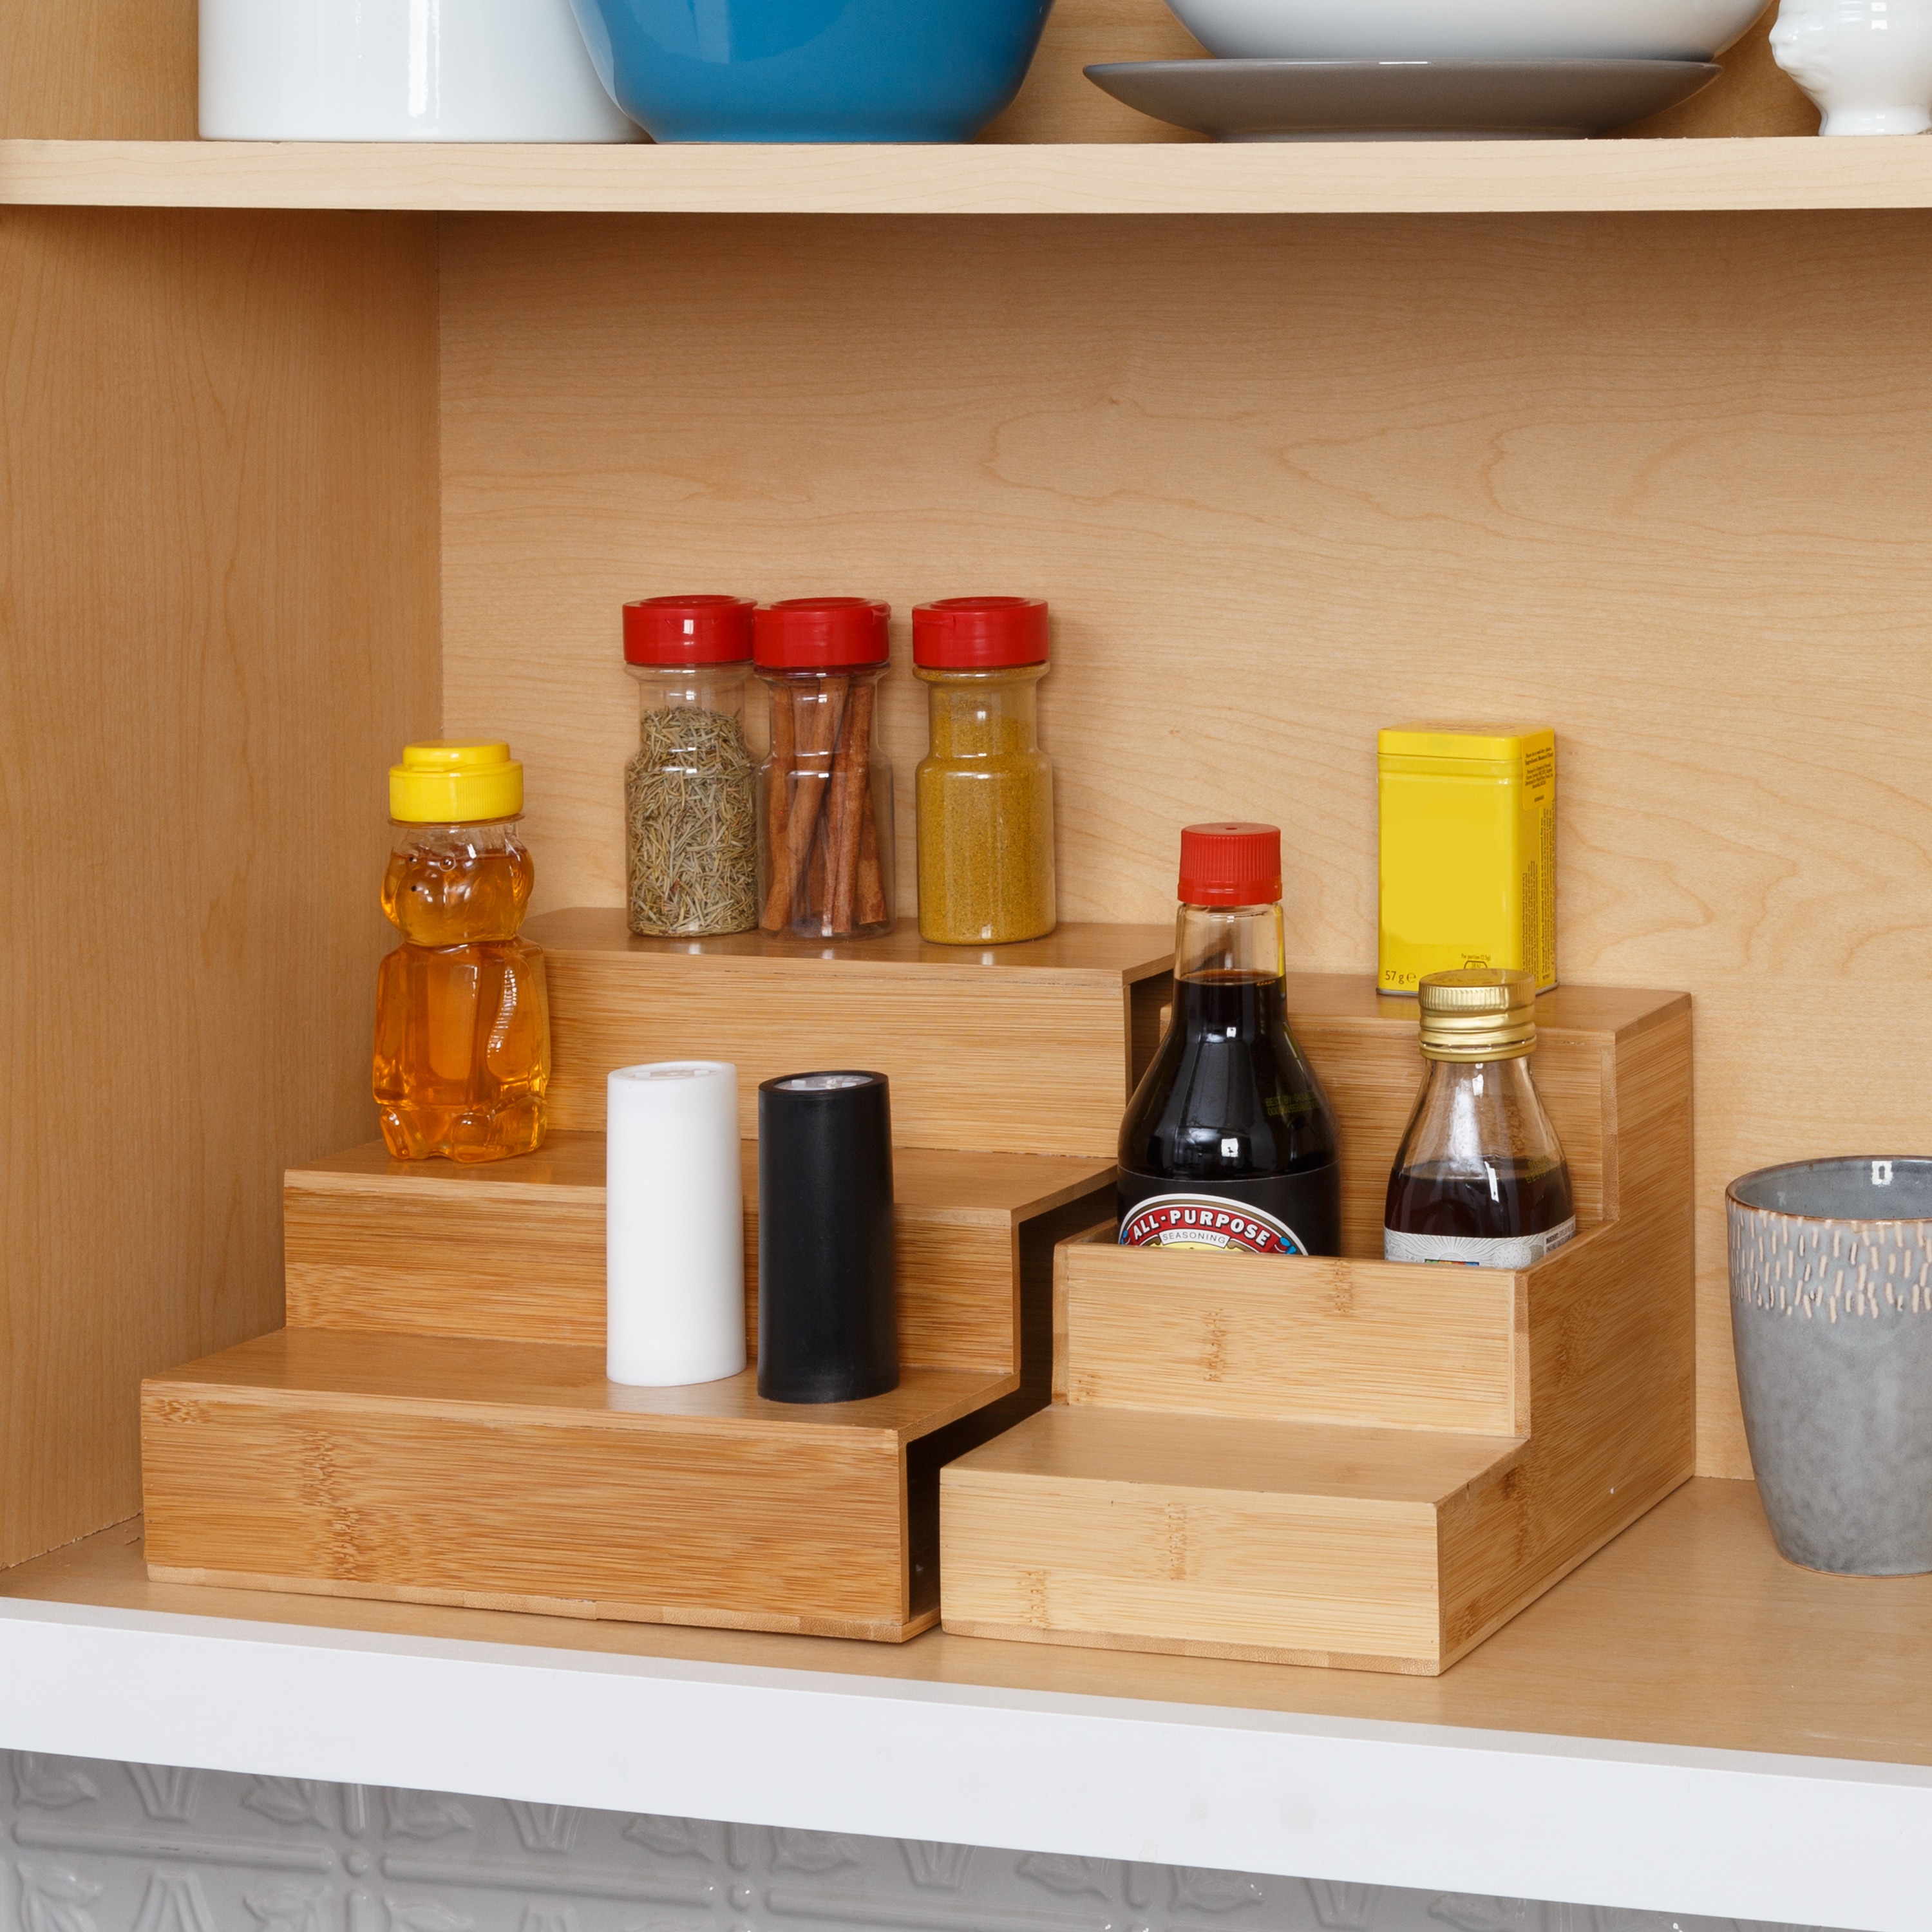 Wholesale Reusable Wall Mounted Spice Bottle Rack Holder Corner Basket  Shelf For Kitchen Home Storage